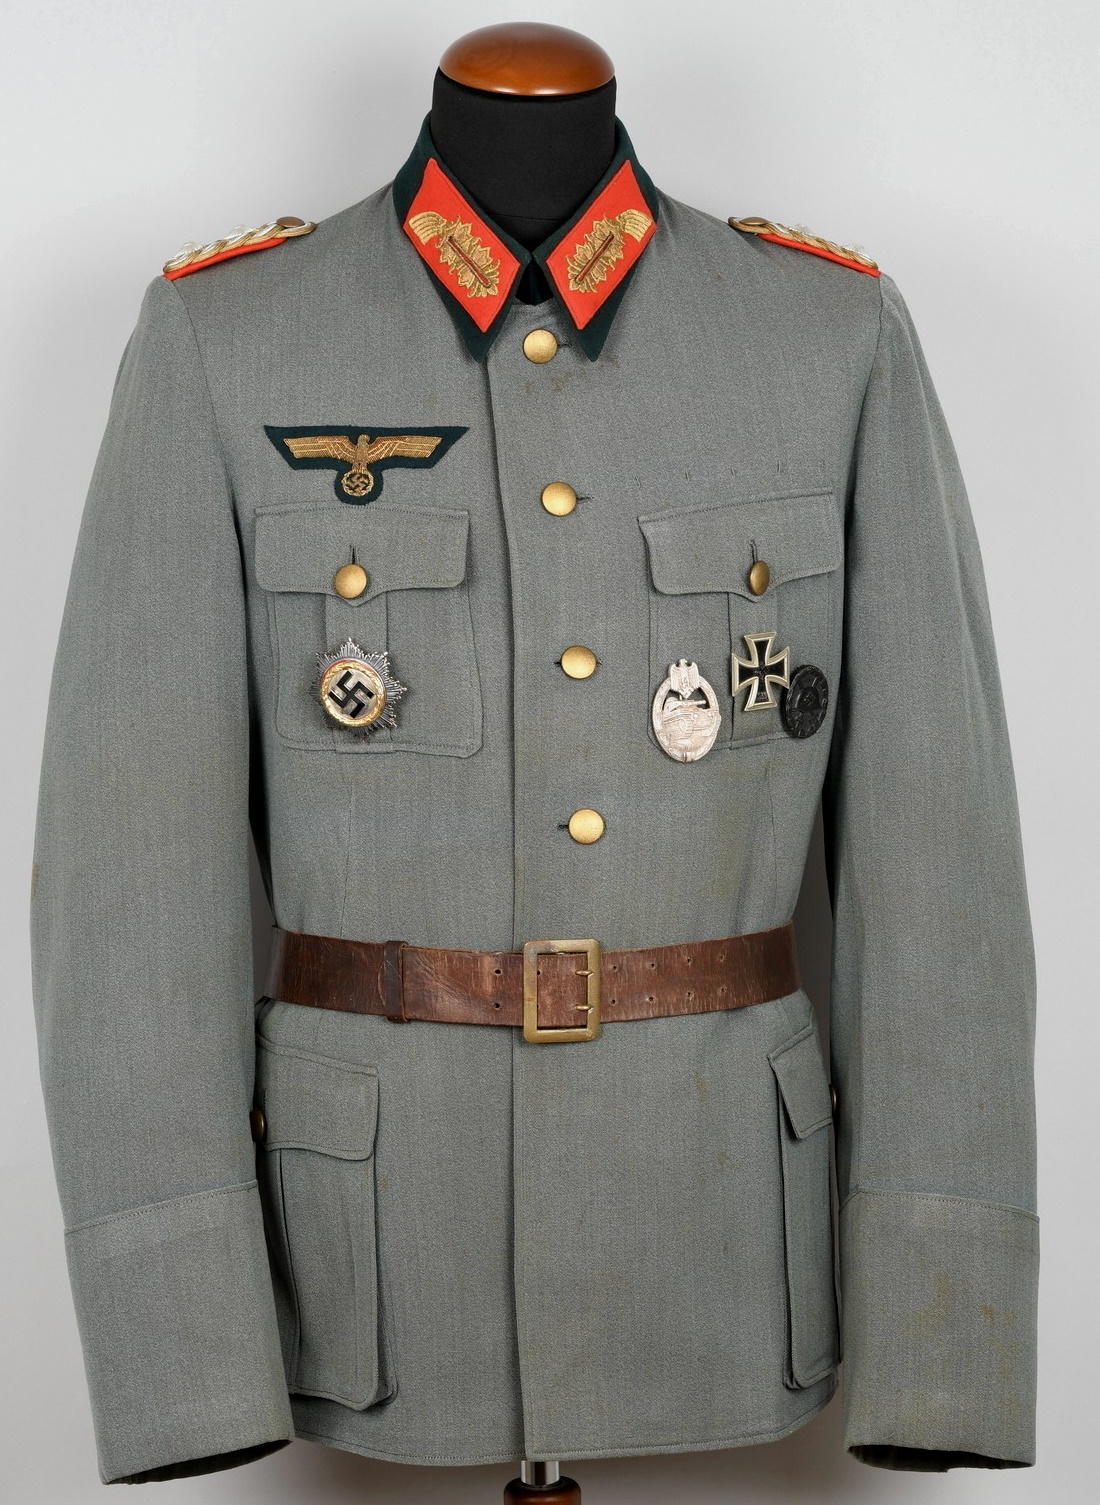 Heer General der Infanterie Combat Tunic